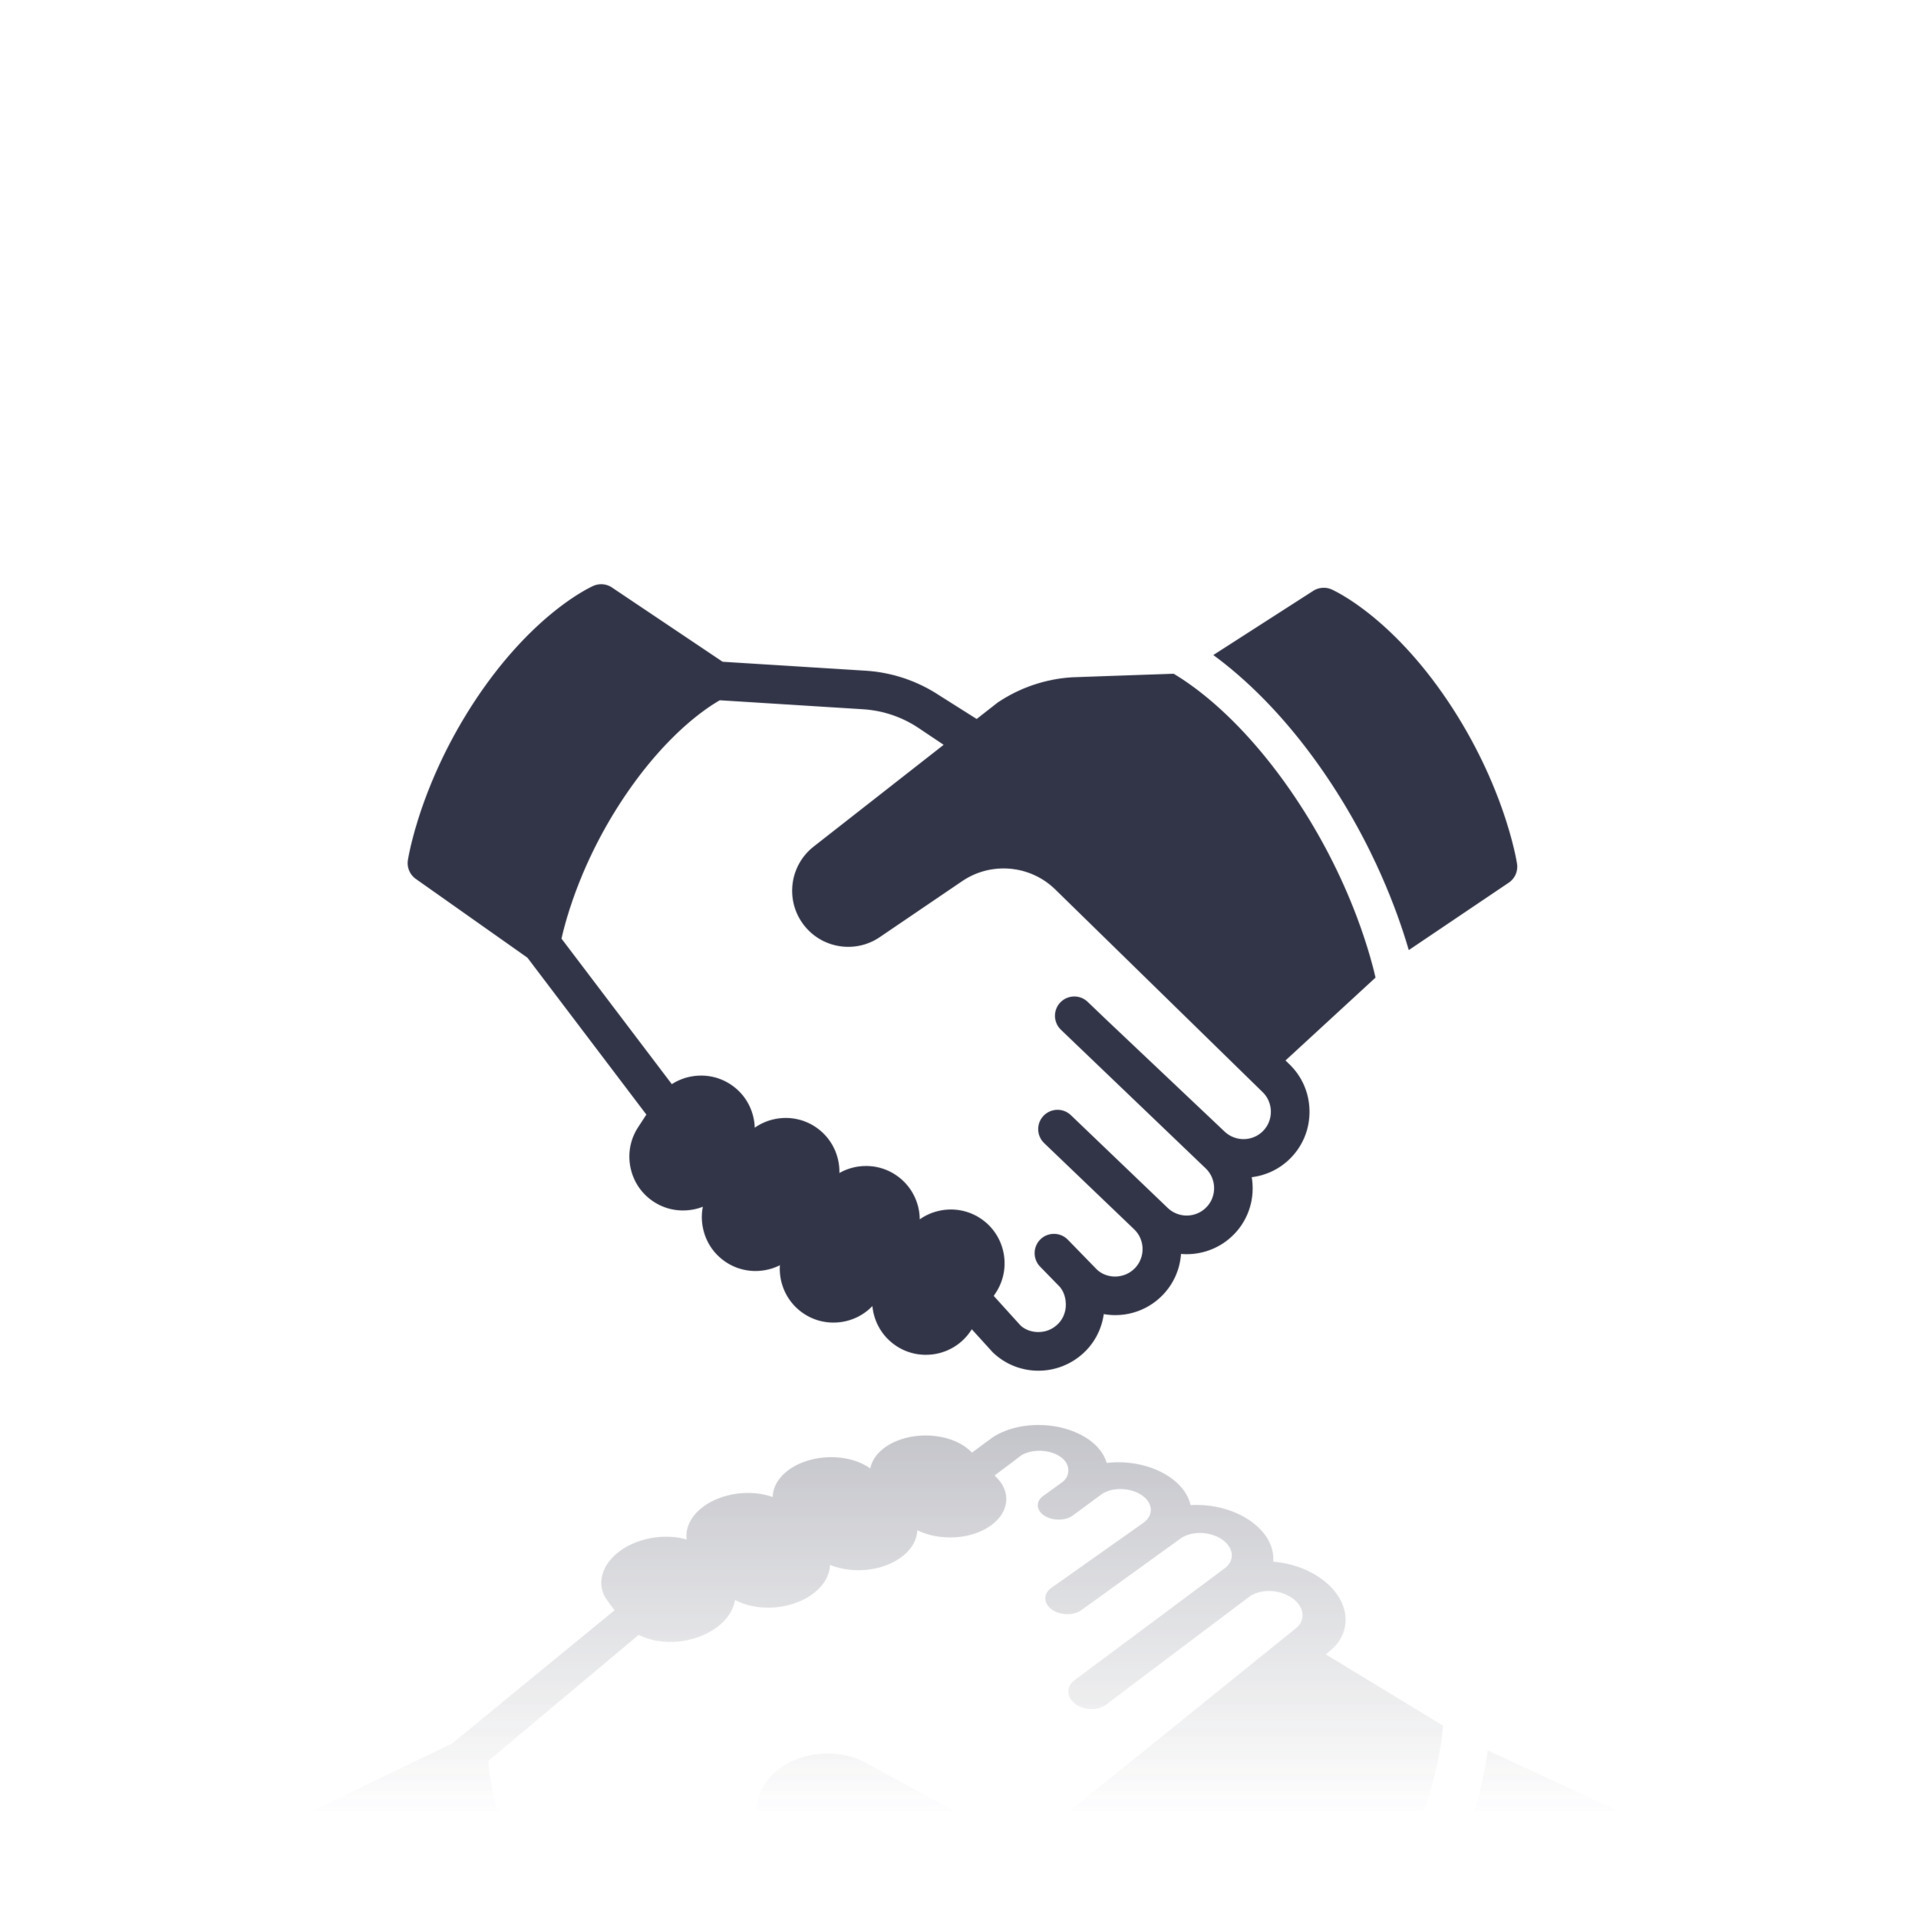 Handshake Emoji. Two Hands Partnership. Deal. Vector Stock Vector